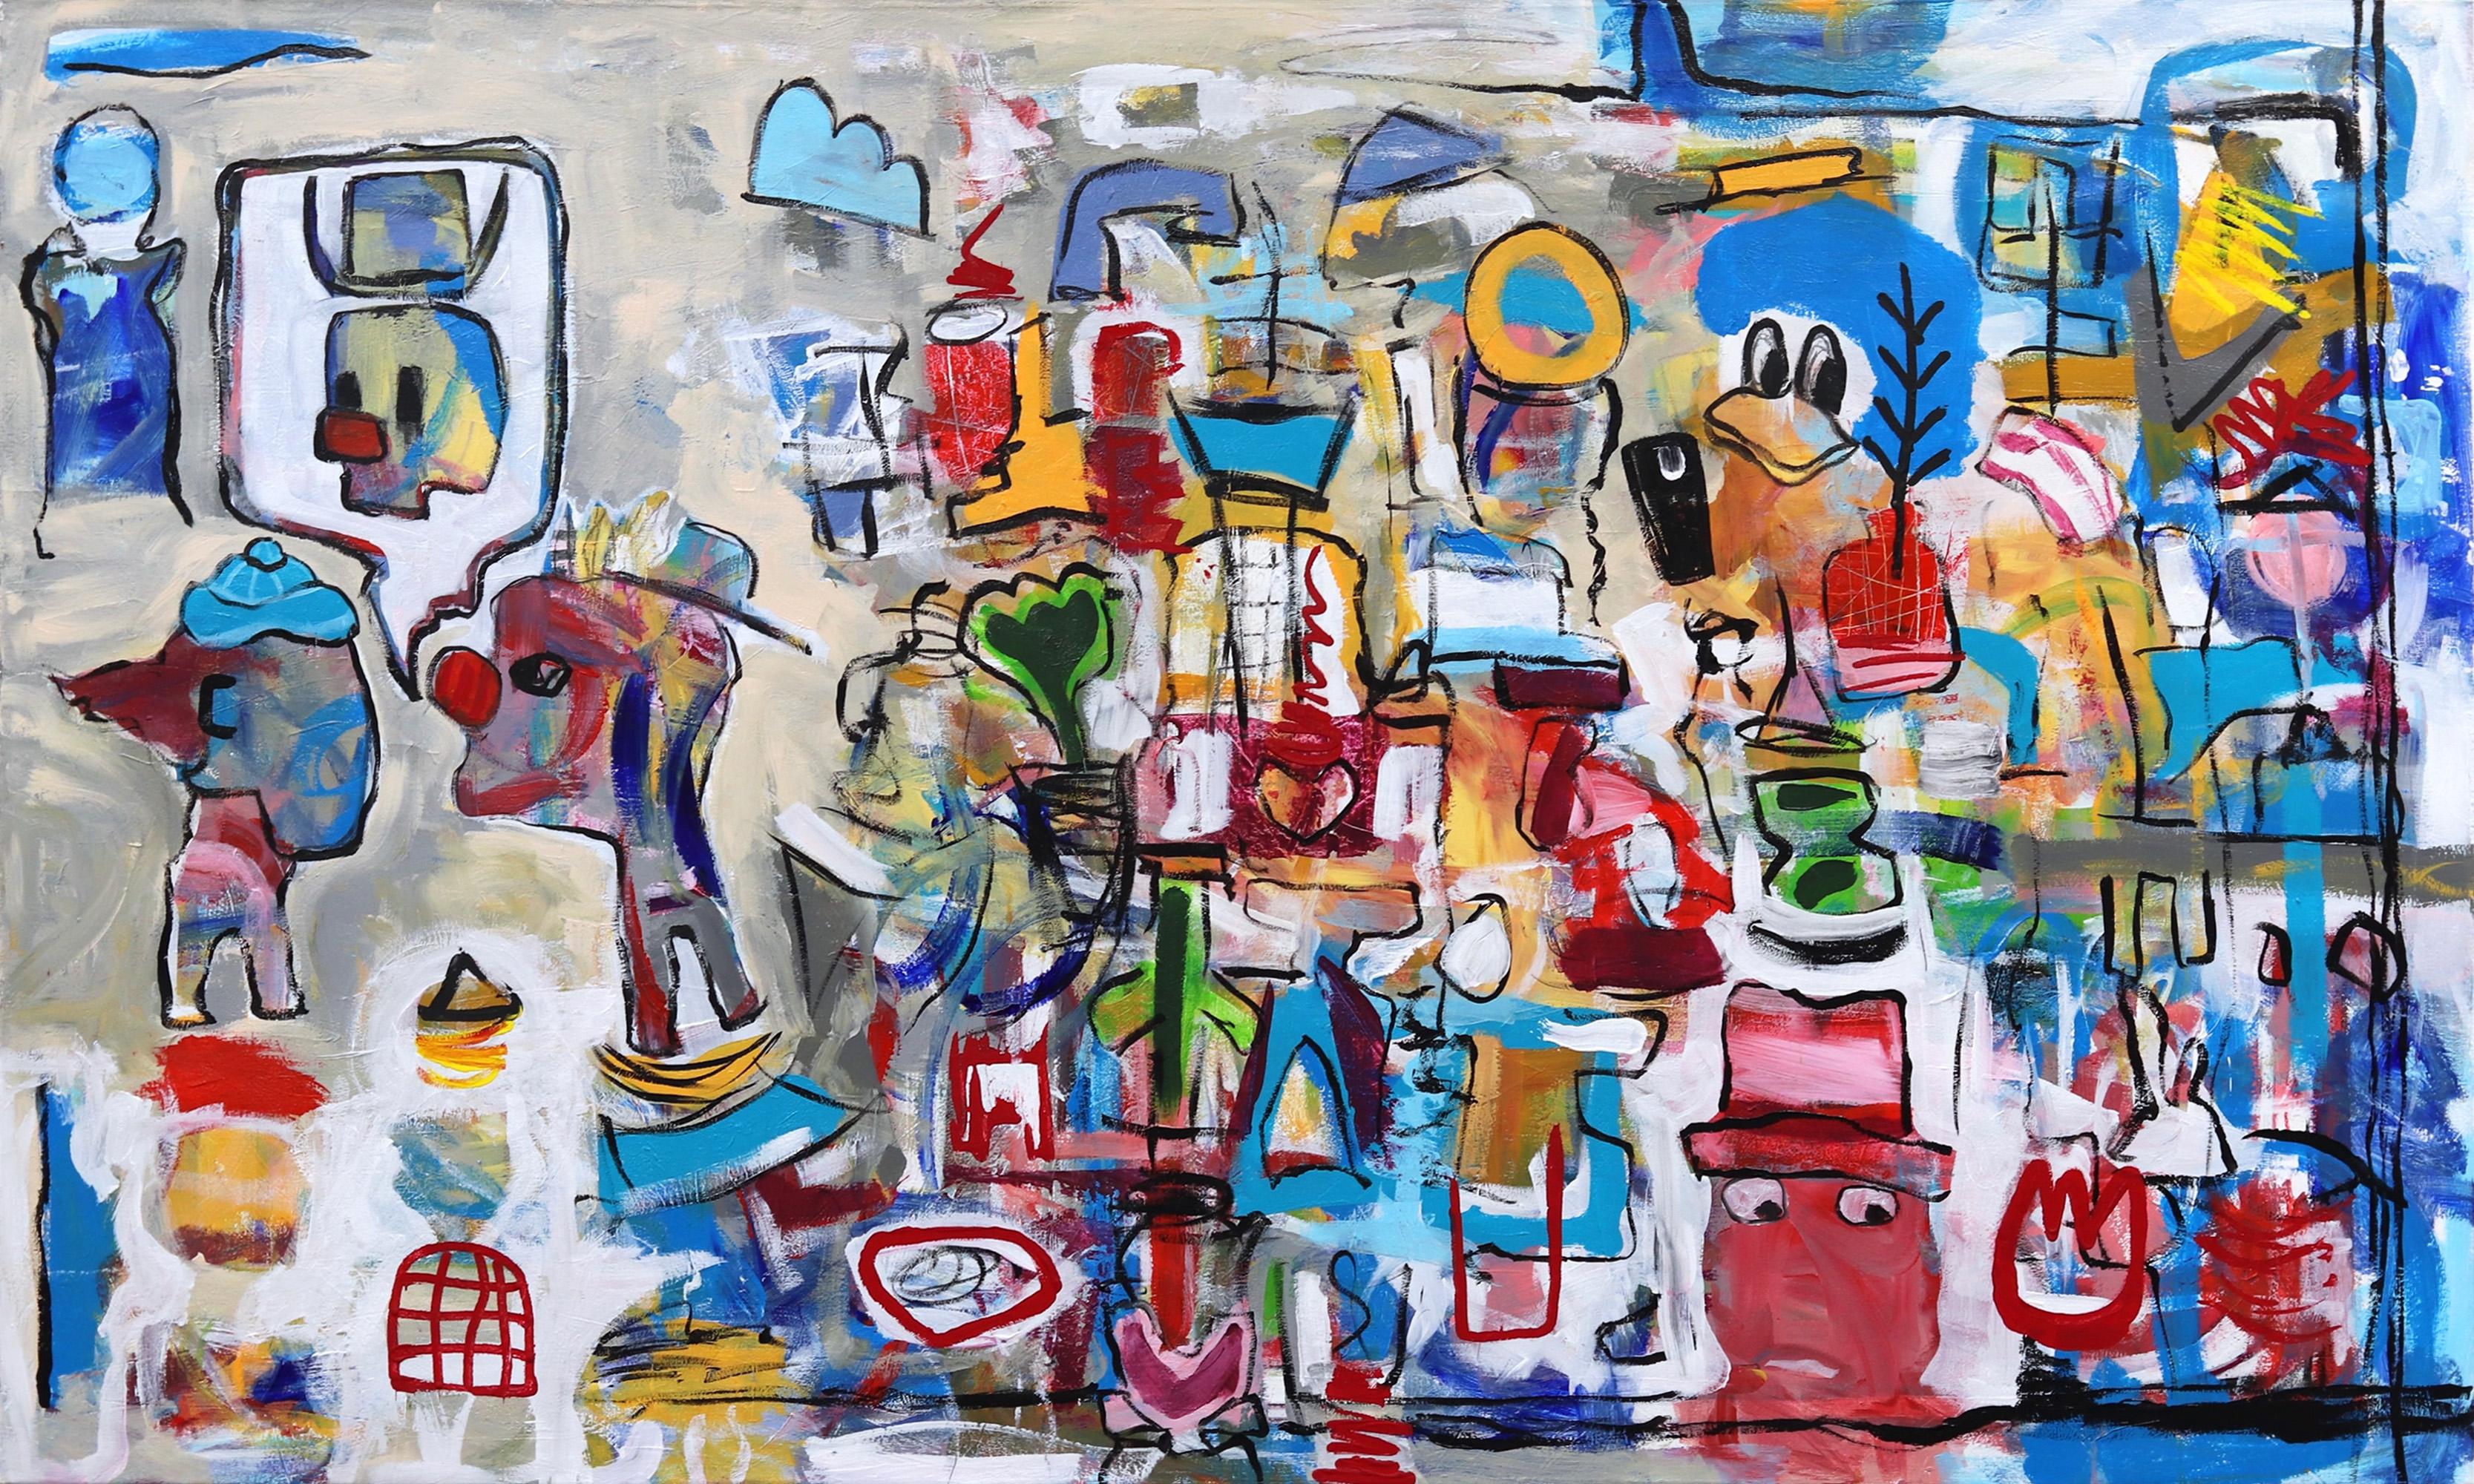 Clown County Fair - Großes farbenfrohes figuratives abstraktes Kunstwerk im neoexpressionistischen Stil – Mixed Media Art von Tommy Lennartsson